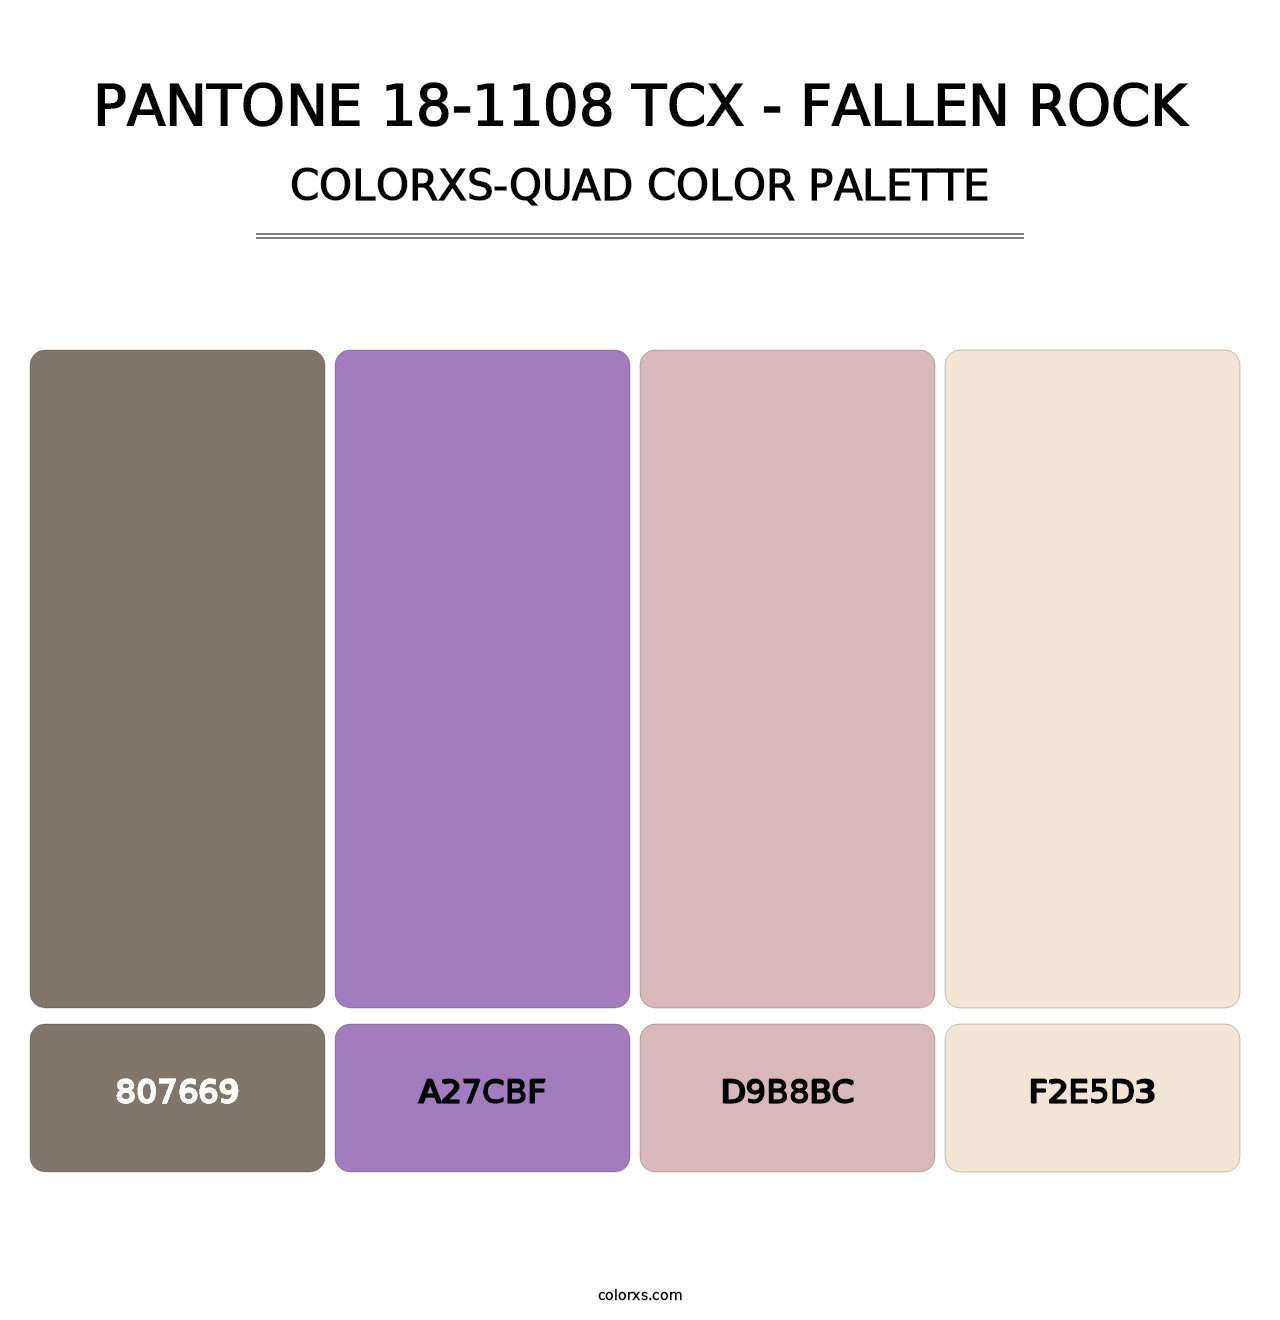 PANTONE 18-1108 TCX - Fallen Rock - Colorxs Quad Palette